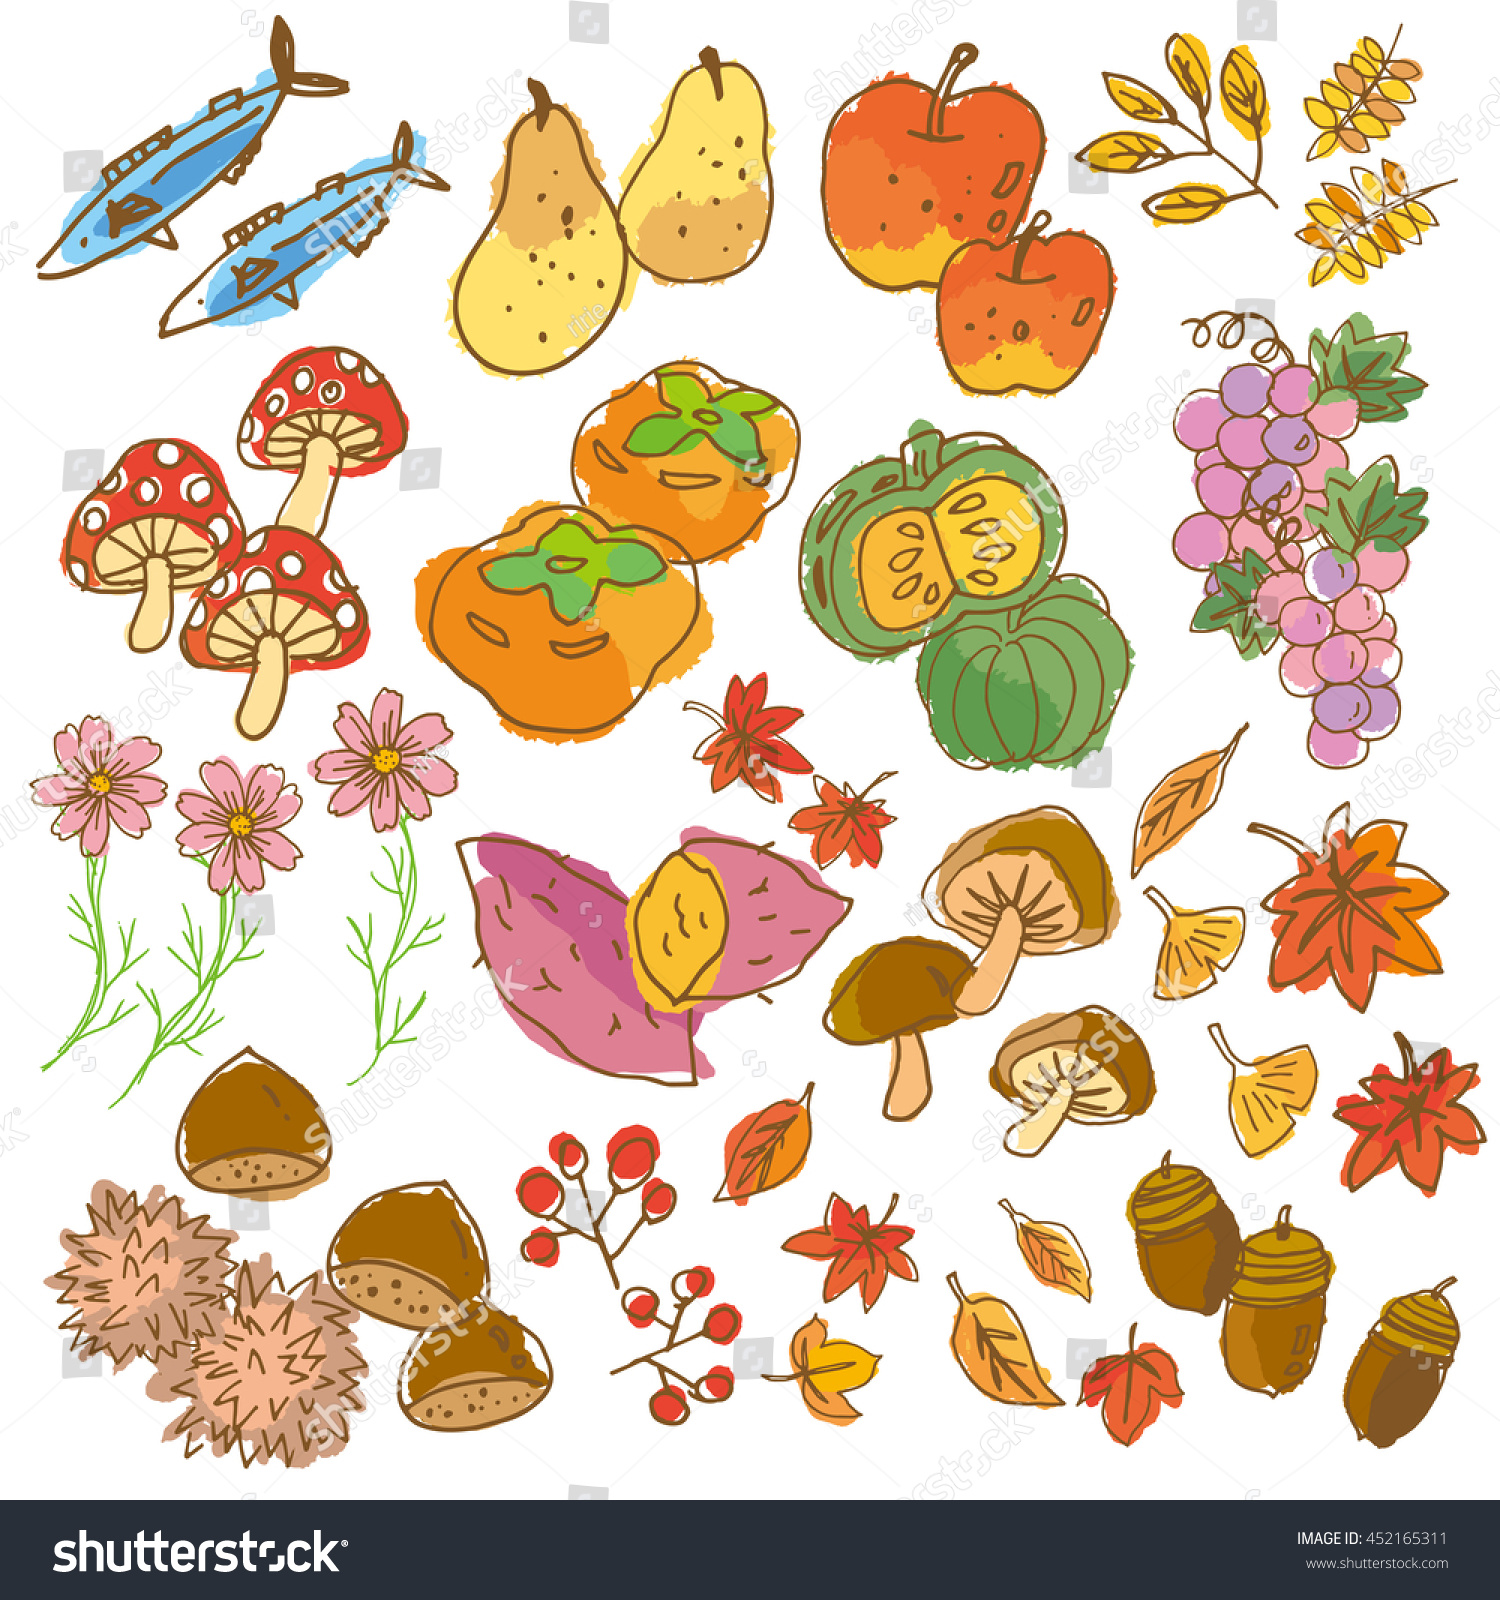 Illustration Of Autumn Fruits - 452165311 : Shutterstock